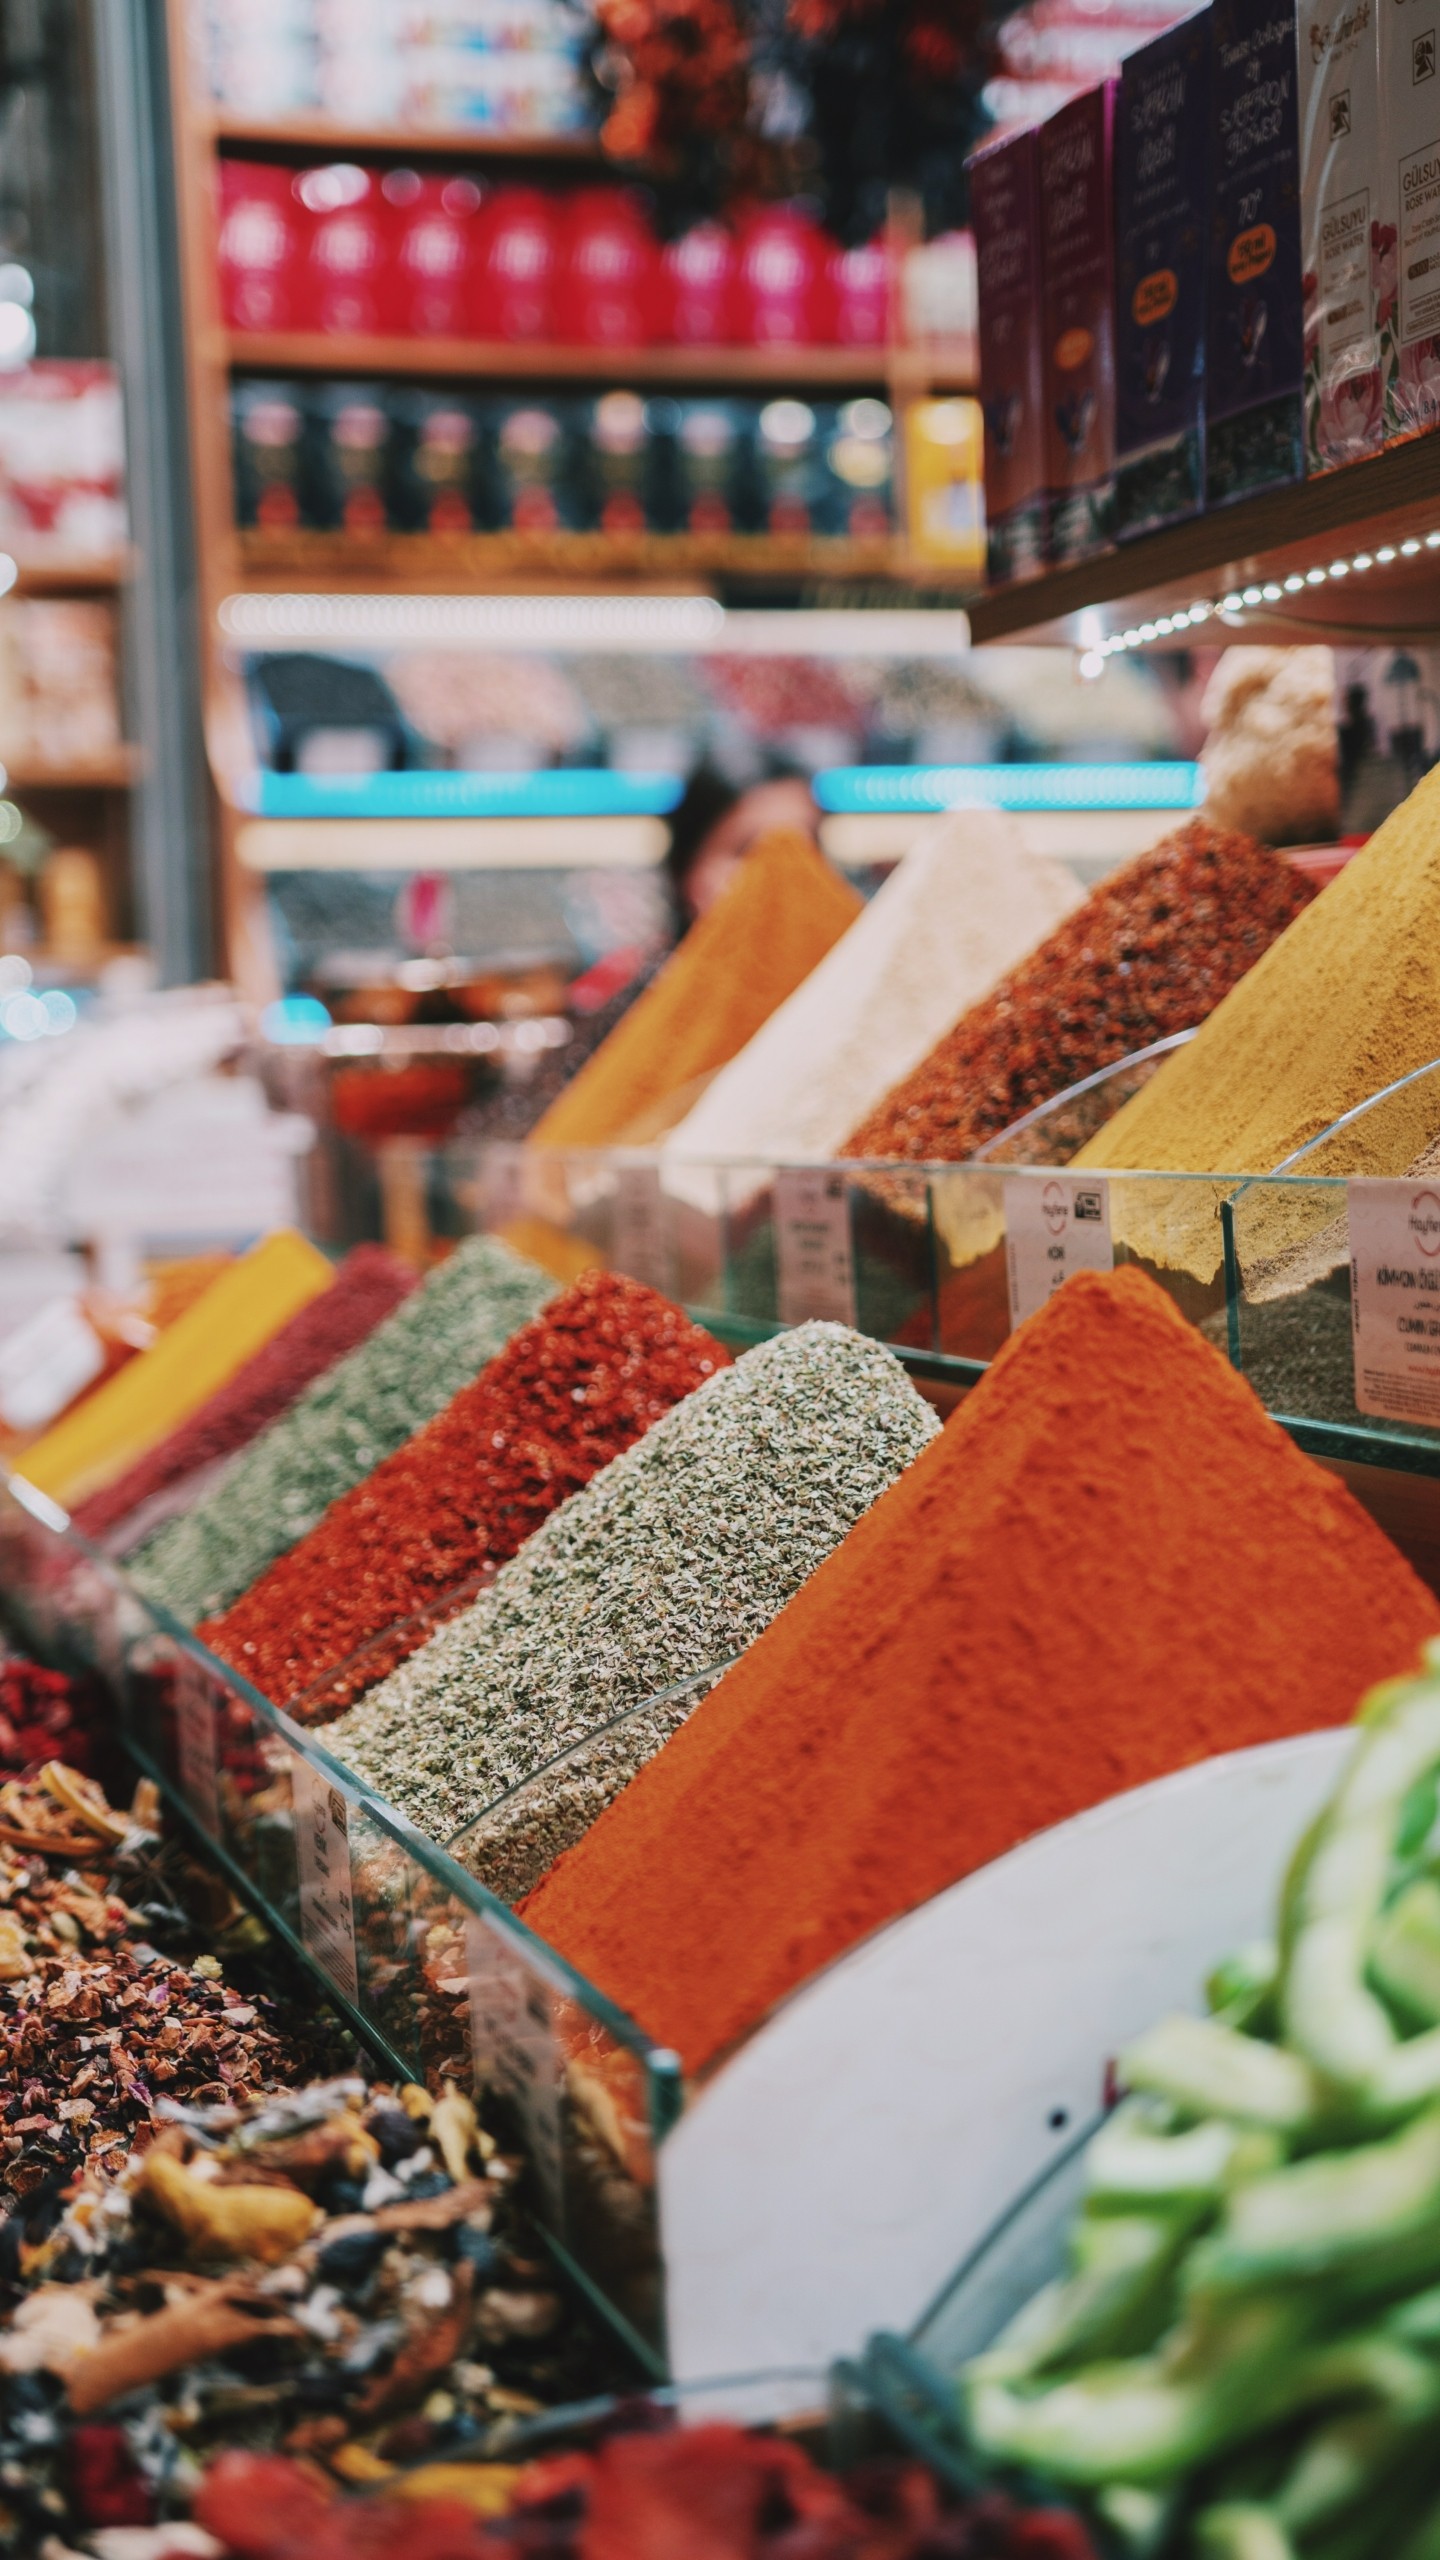 Γευστικές εμπειρίες: Οι 7 κορυφαίες υπαίθριες αγορές στον κόσμο